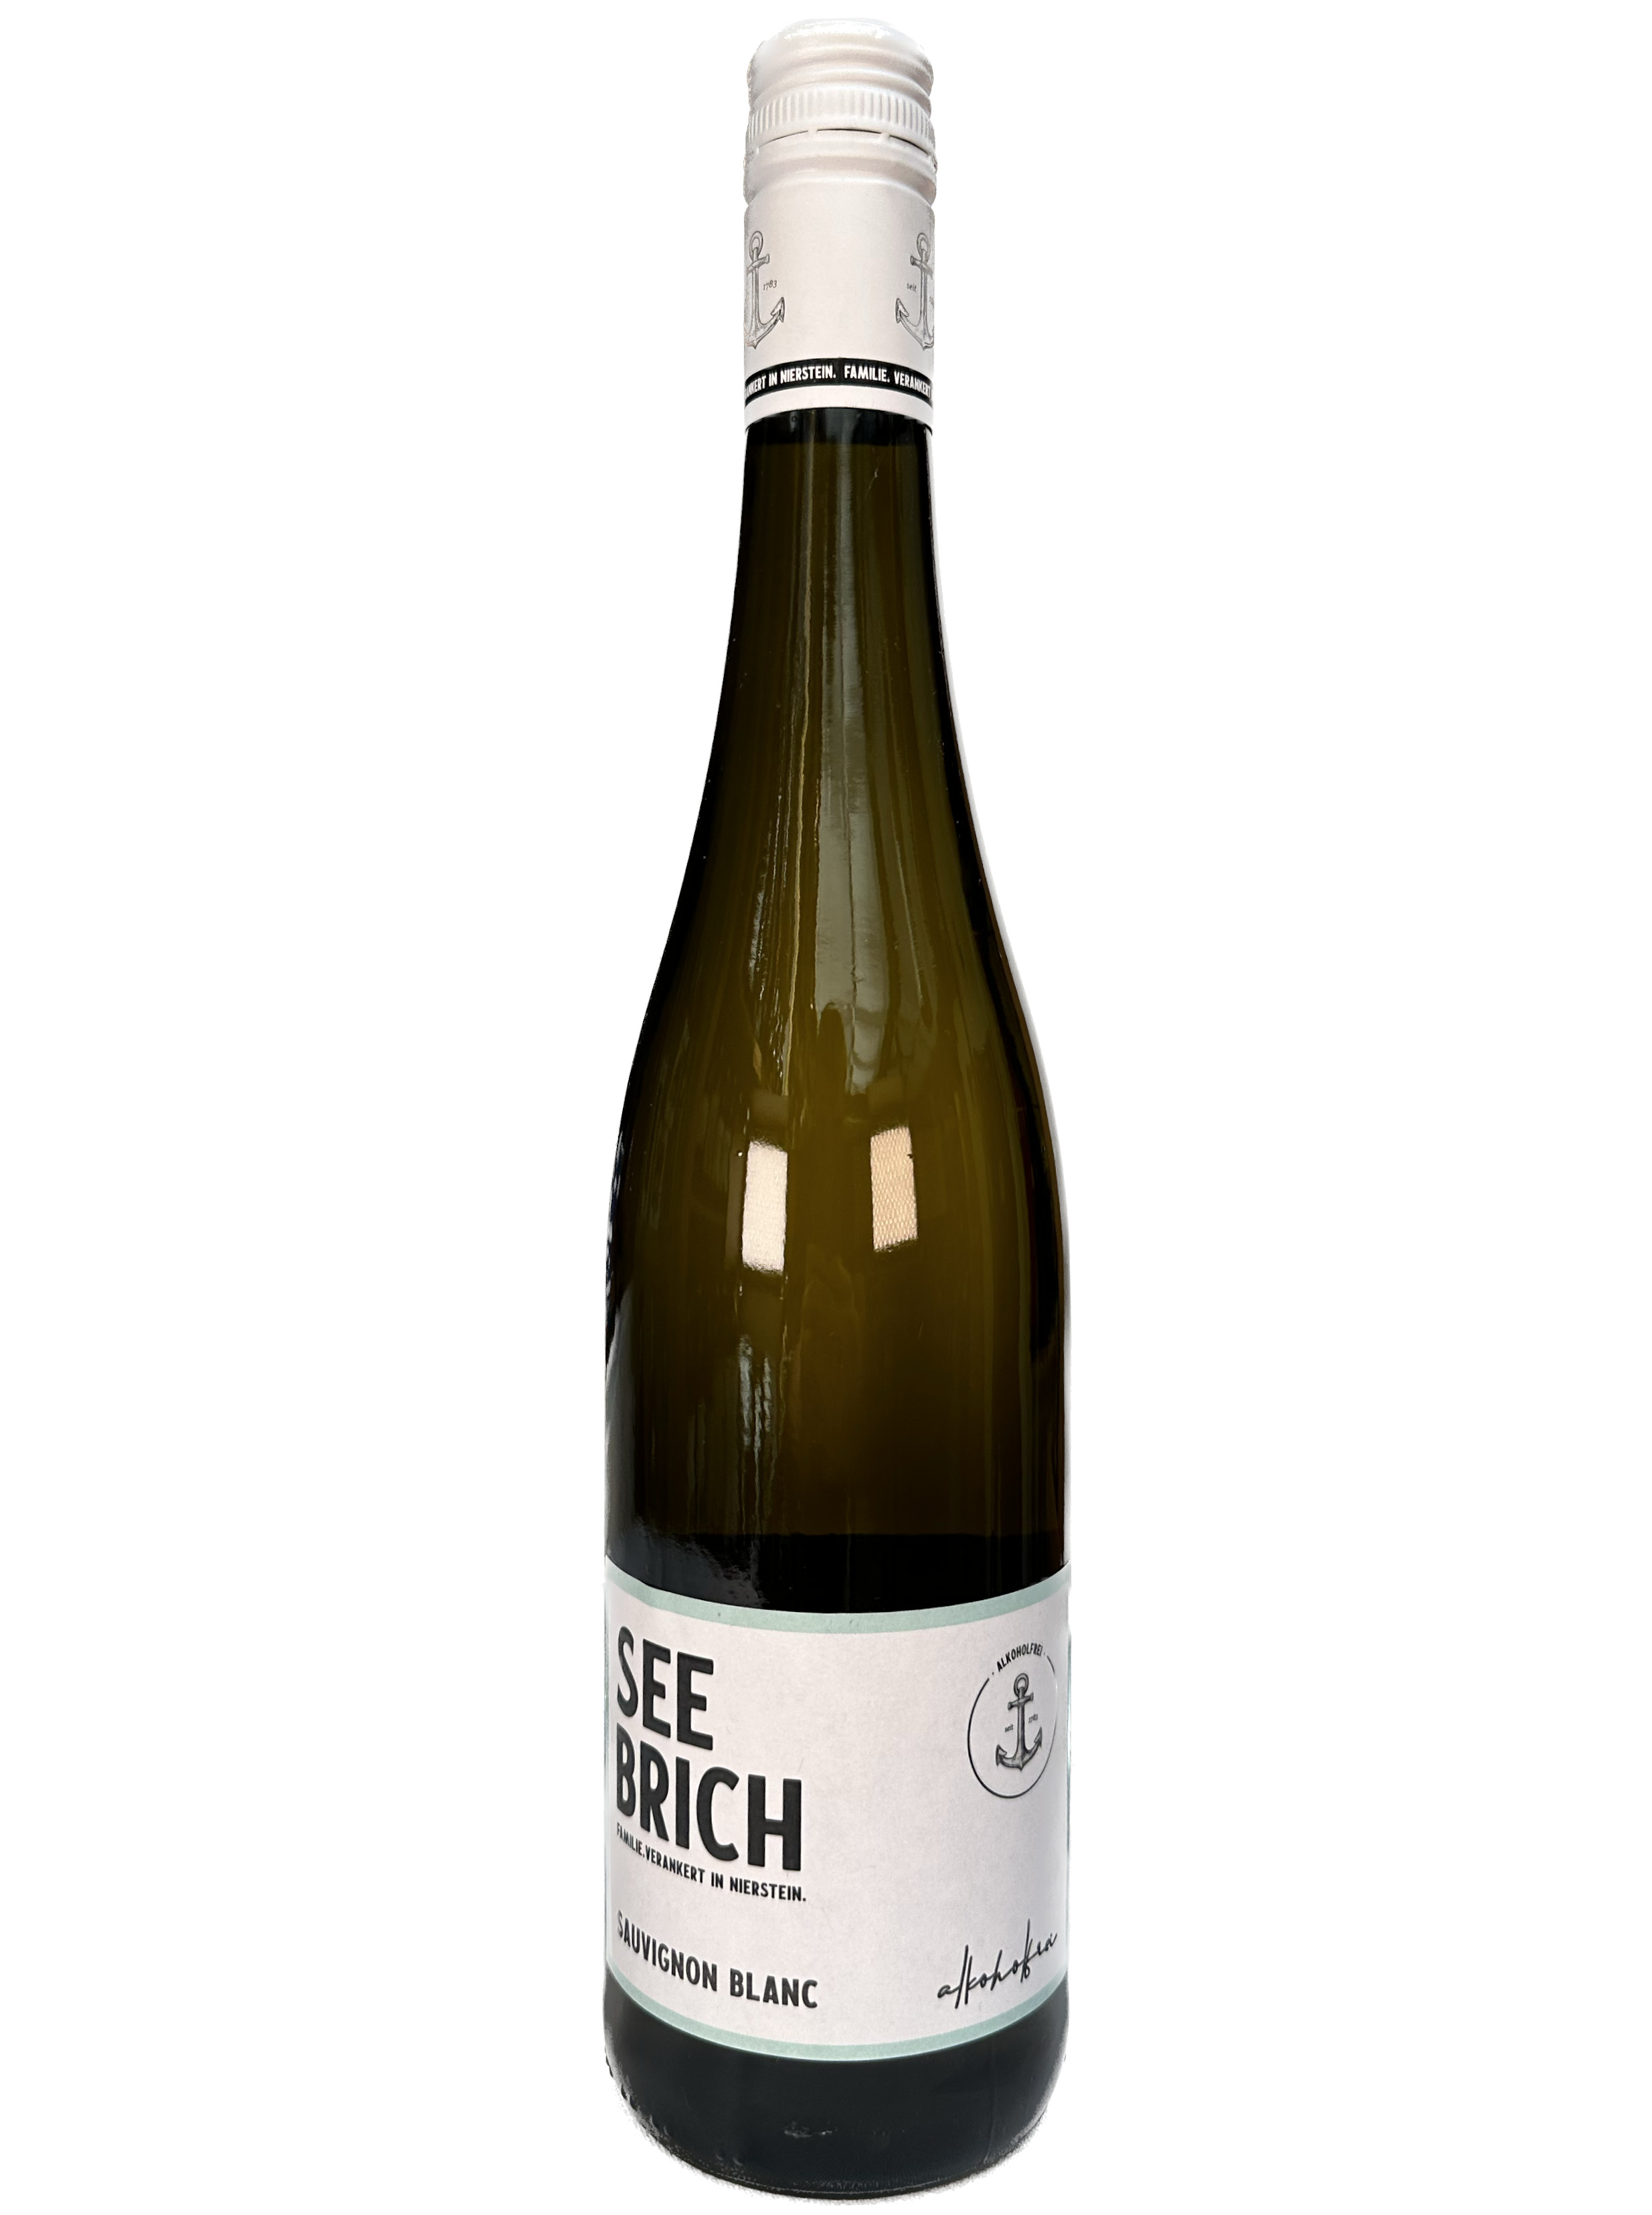 Sauvignon Weinhandel alkoholfrei - Blanc Seebrich Online